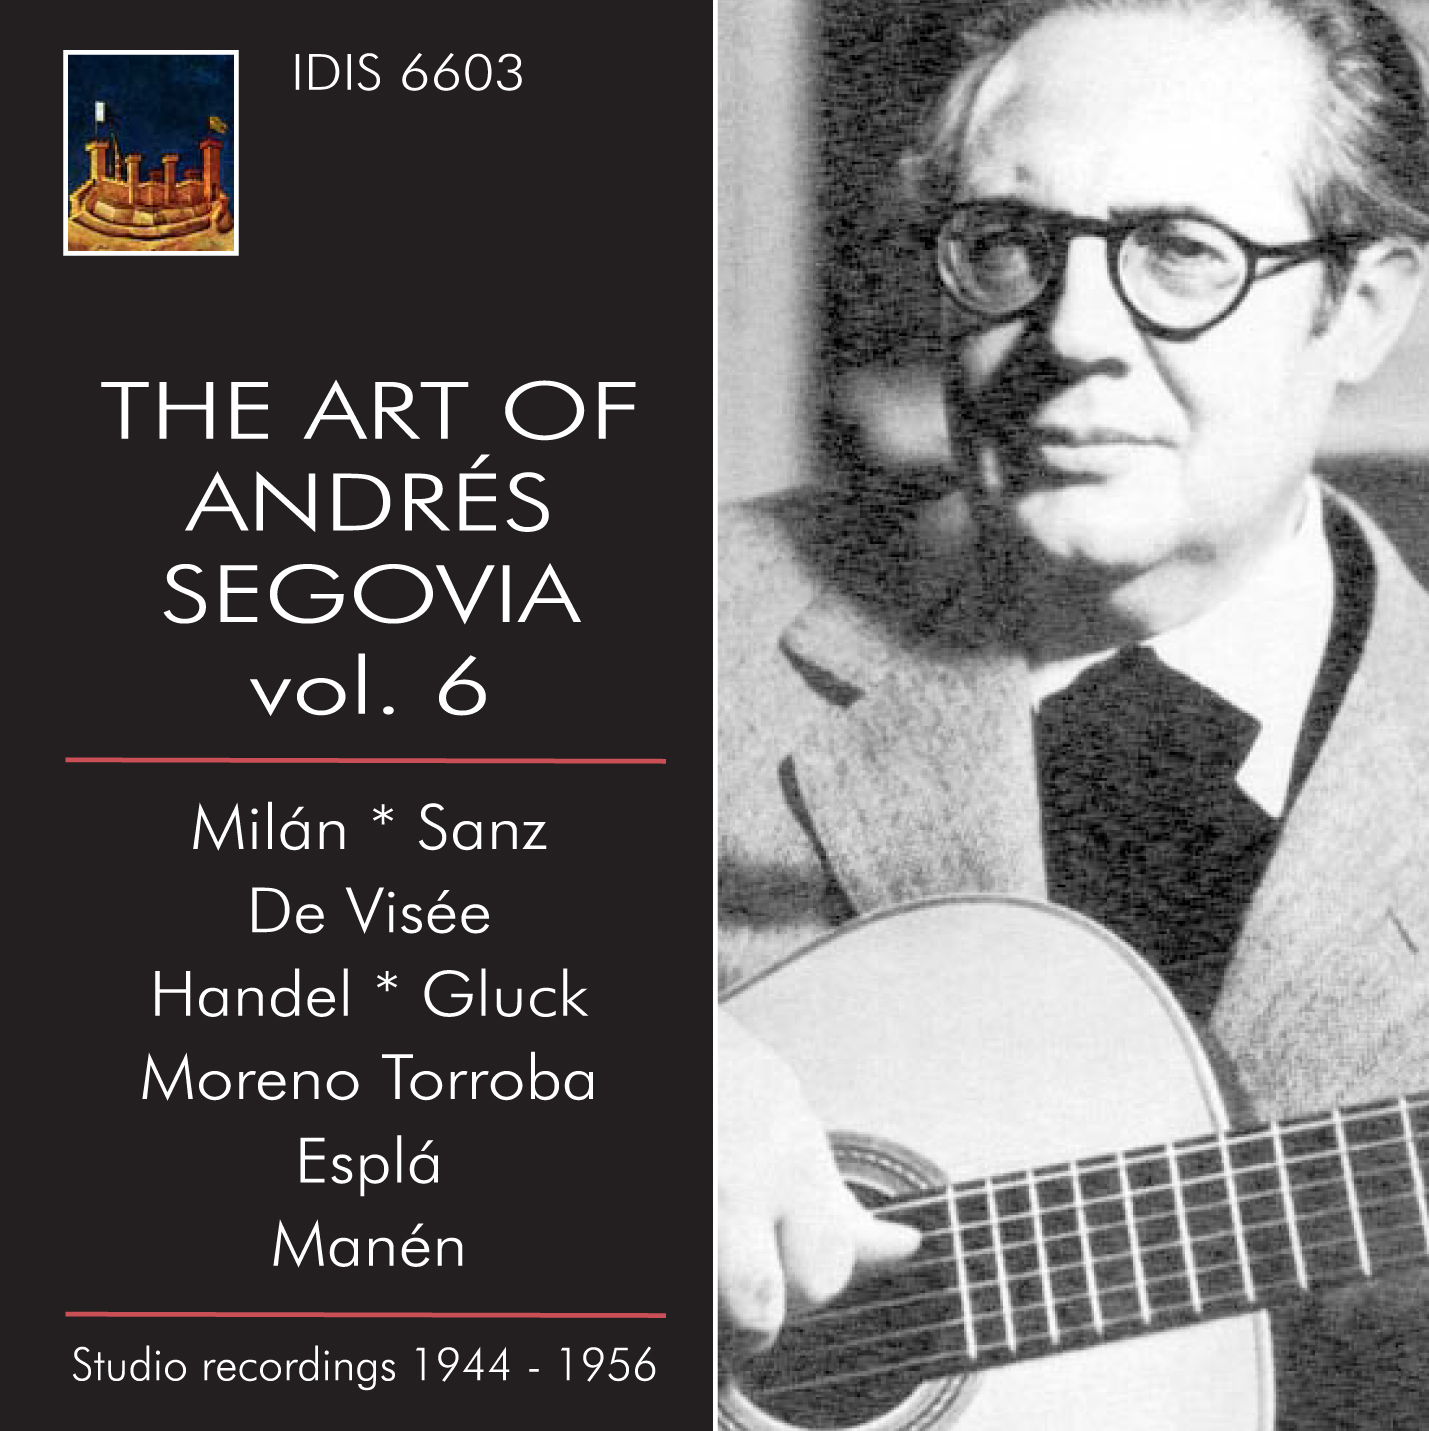 The Art of Andrés Segovia Vol. 6 - 4488714-origpic-a98606